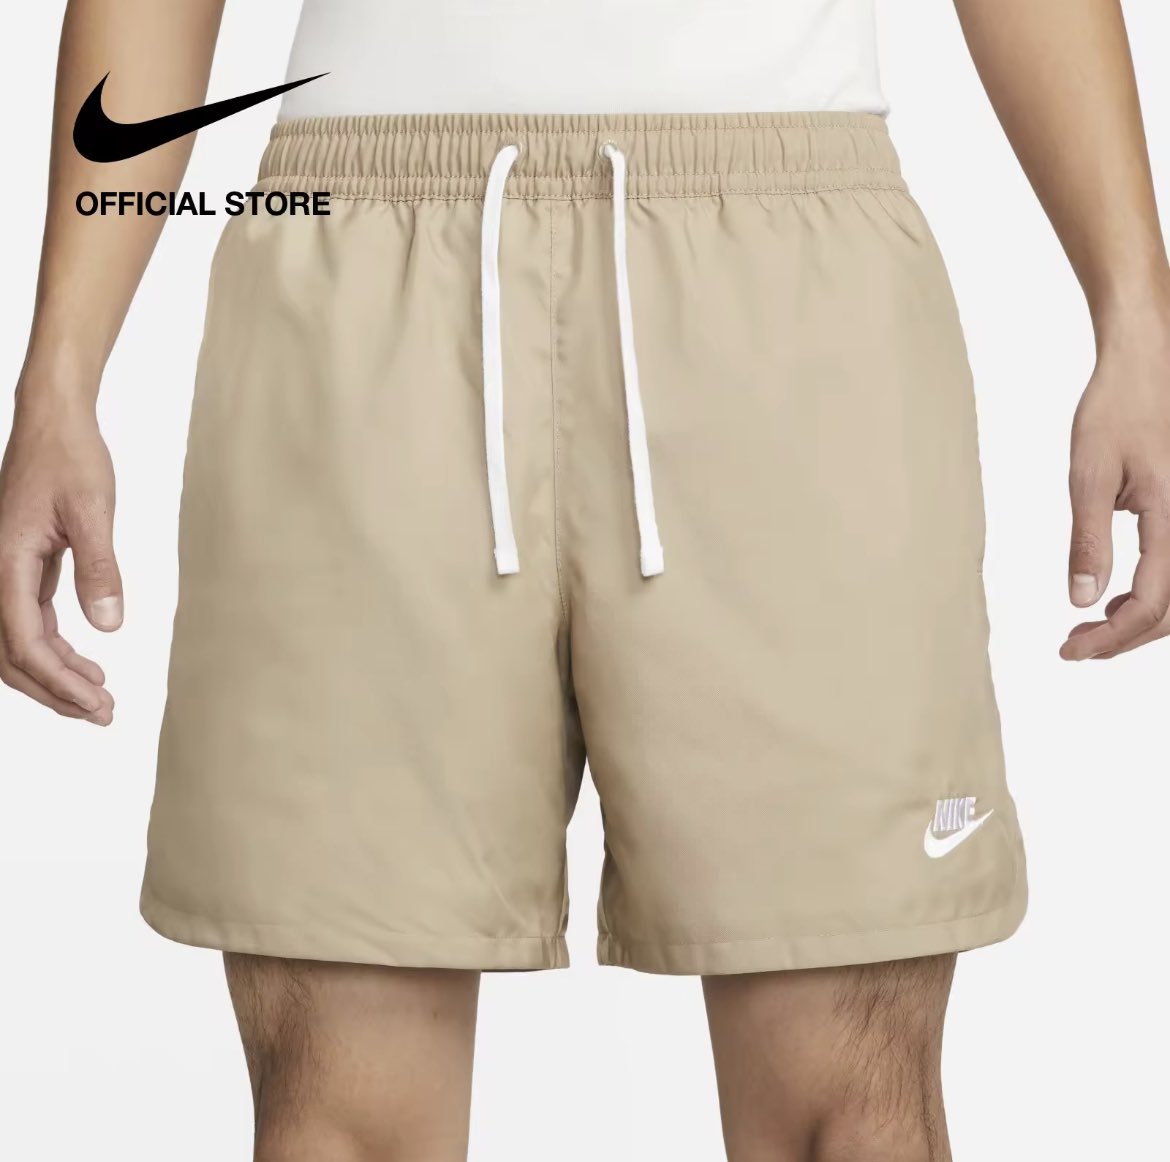 🖤 ป้ายยากางเกง Nike รุ่นที่ชอบที่สุด ใส่สบาย ใส่ง่ายได้ทุกโอกาส ใส่ไปยิม ใส่ไปเที่ยวได้หมด พิกัด 🛒 s.lazada.co.th/s.kNv14?cc